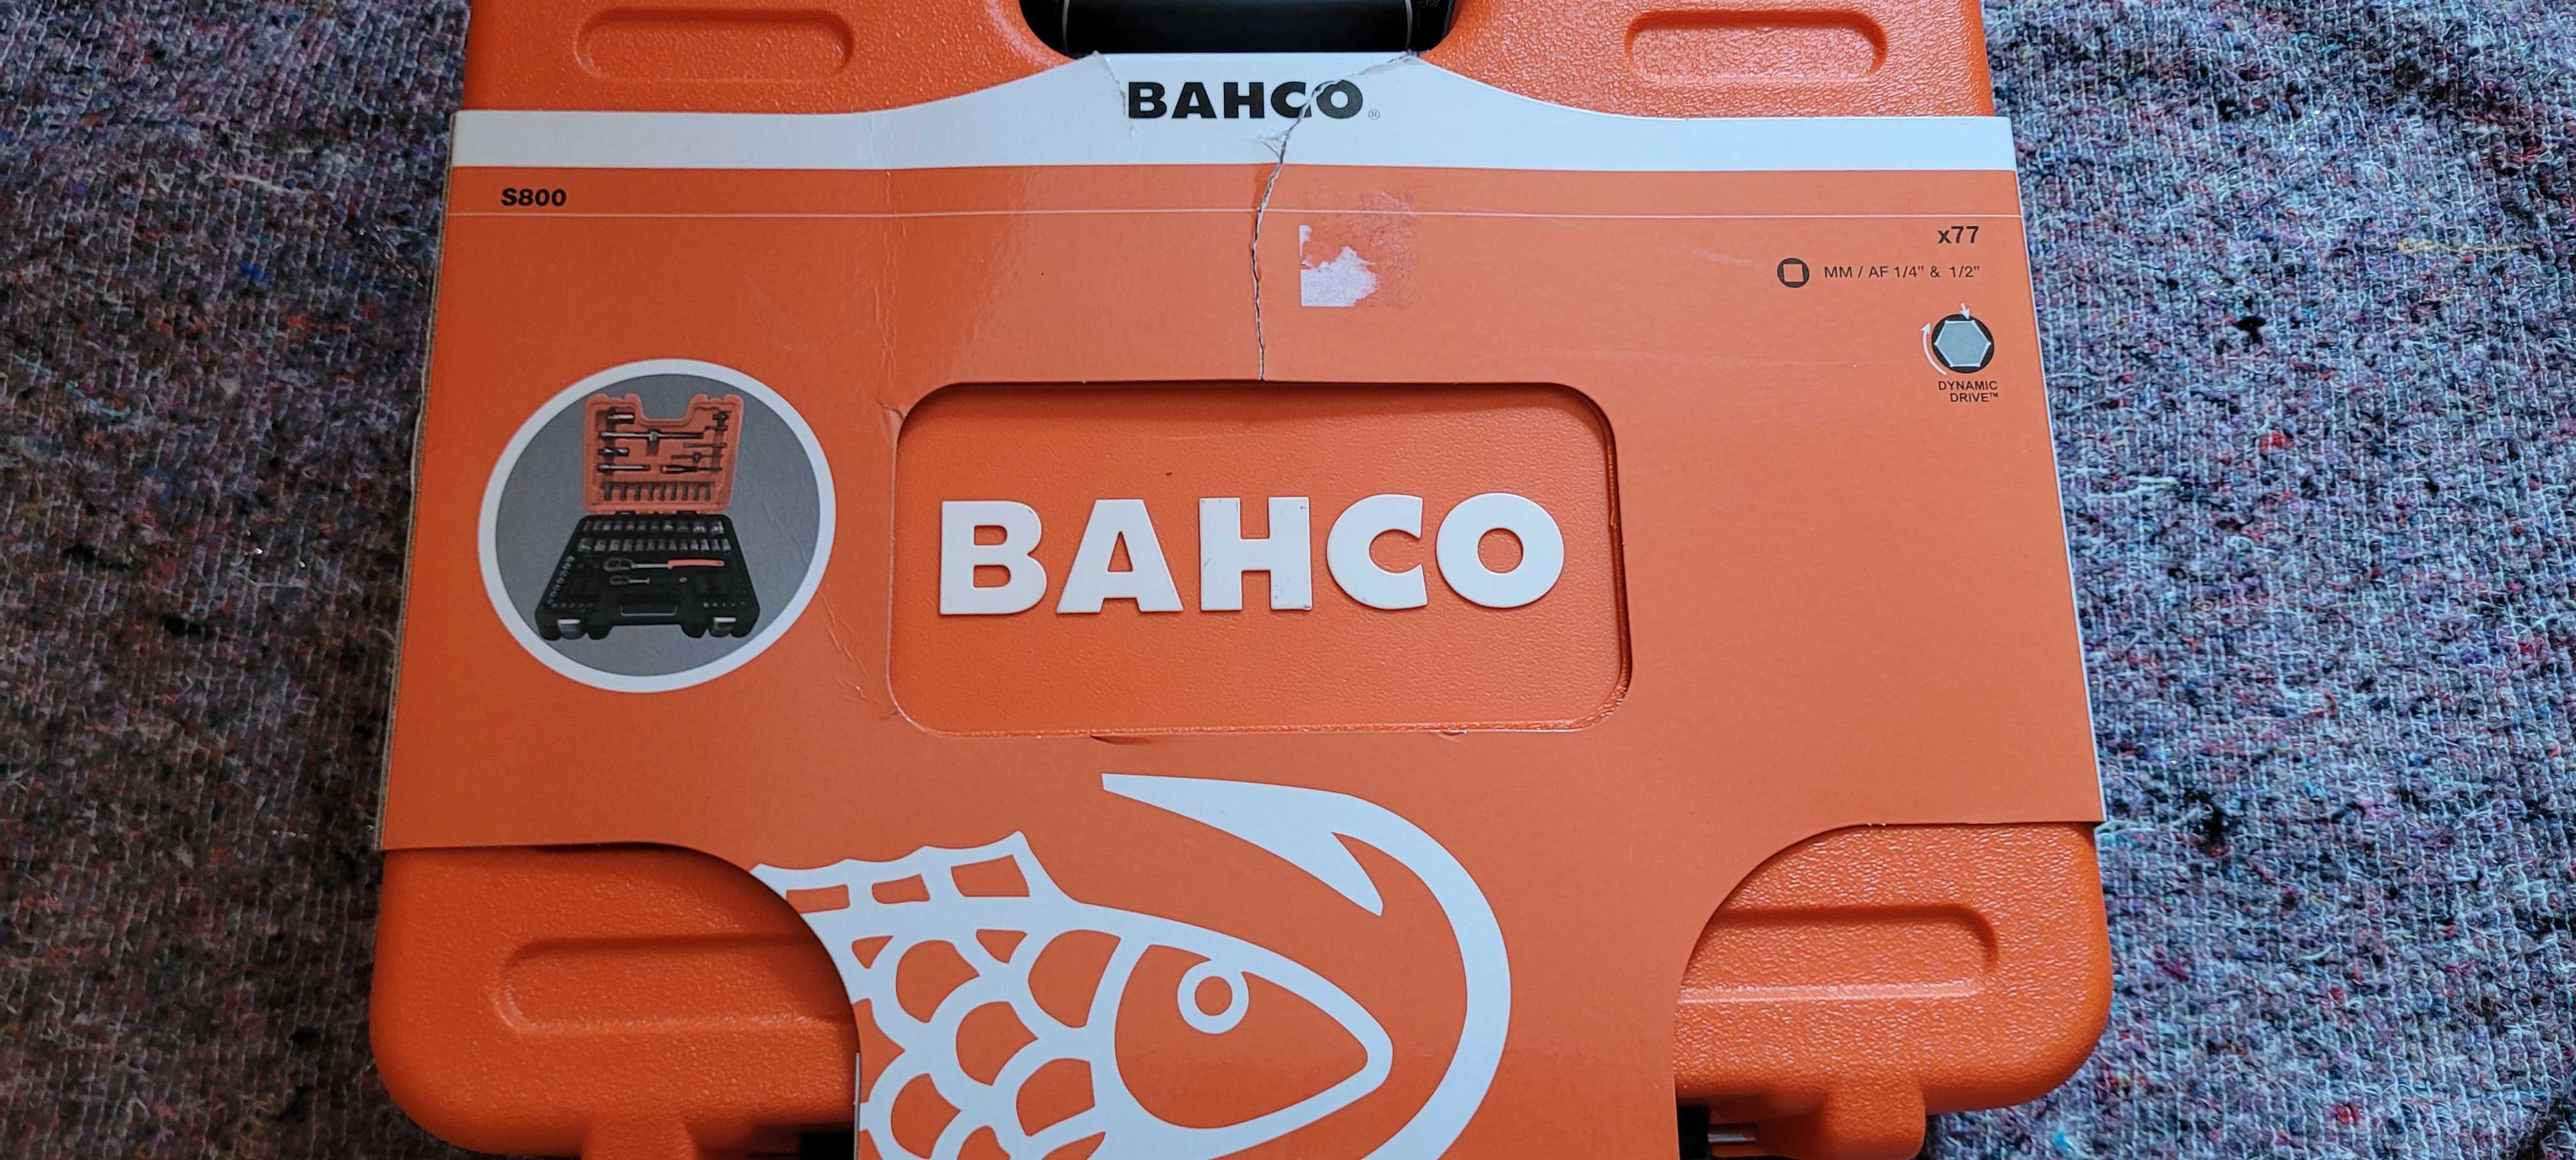 BAHCO zestaw kluczy walizka Nowe S800